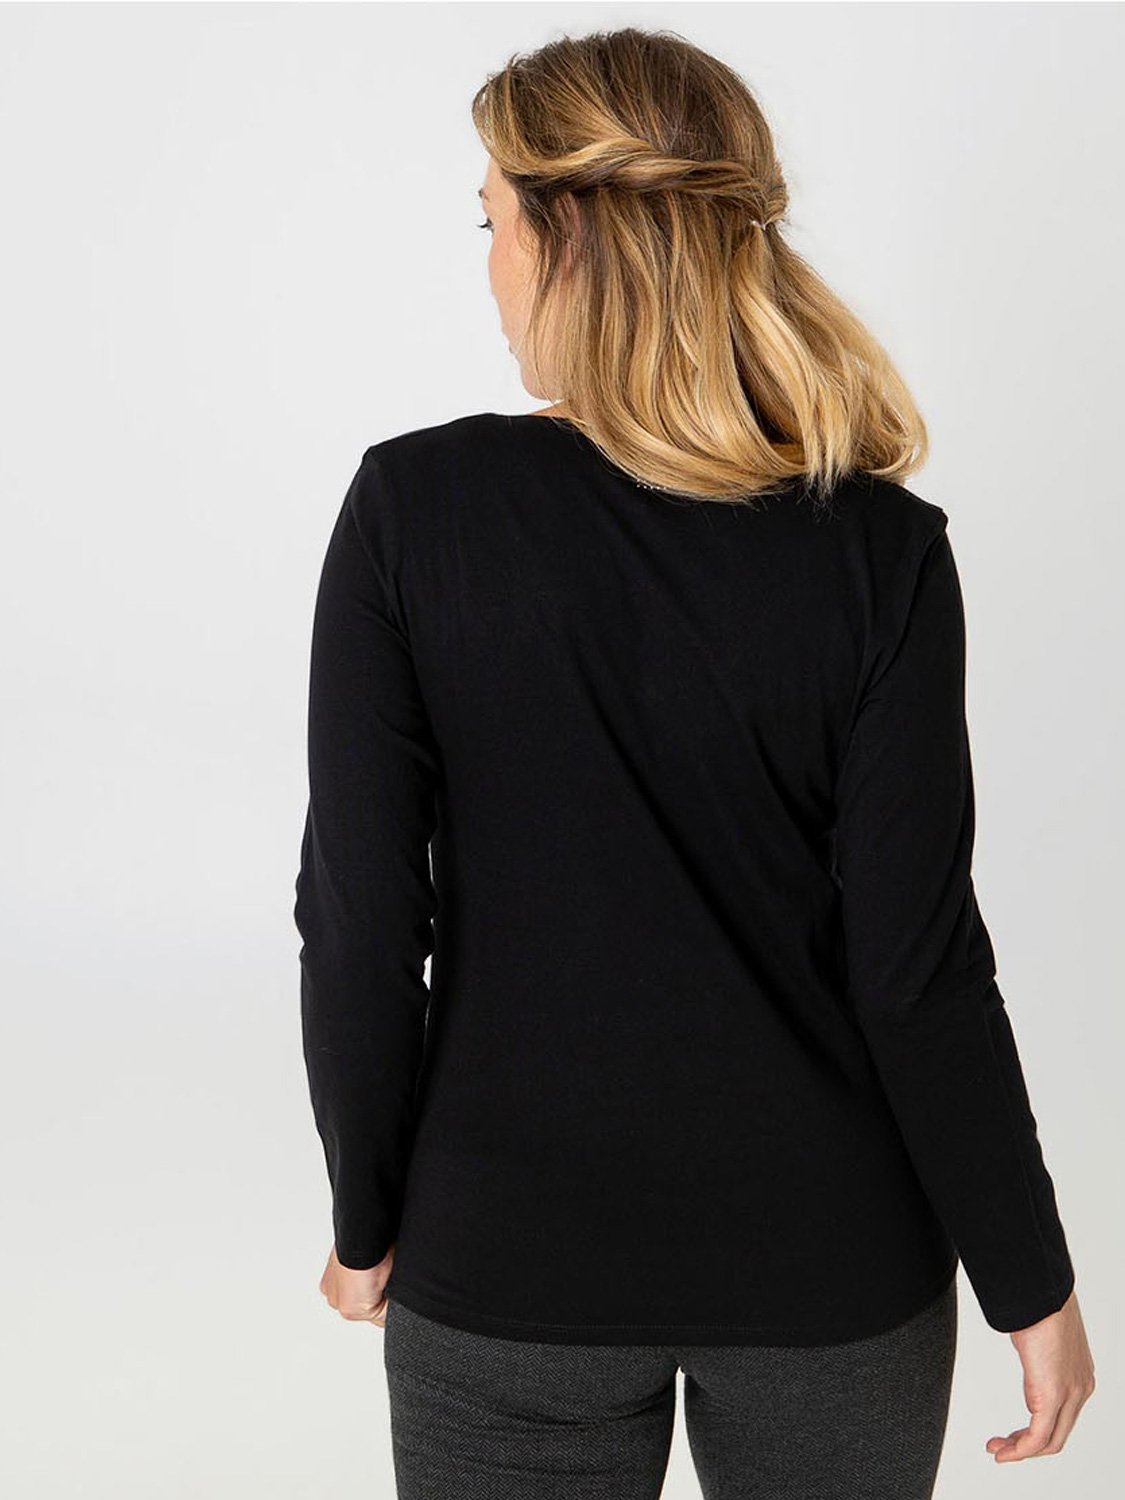 Pro Series - T-shirt manches longues femme Rassembler noir